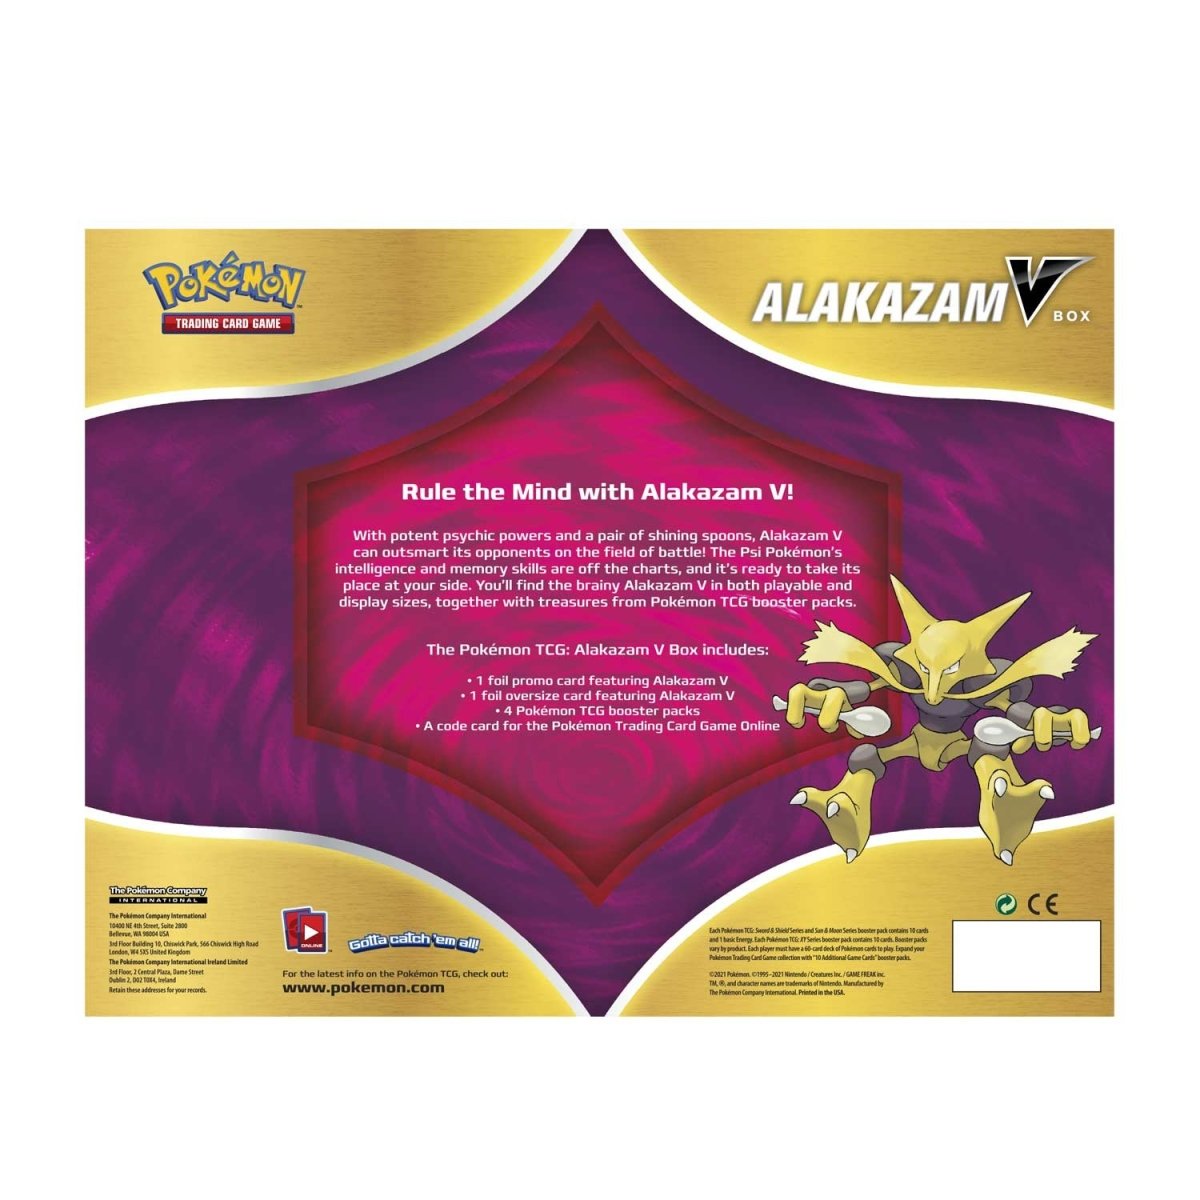 Alakazam - Comprar em whatcha